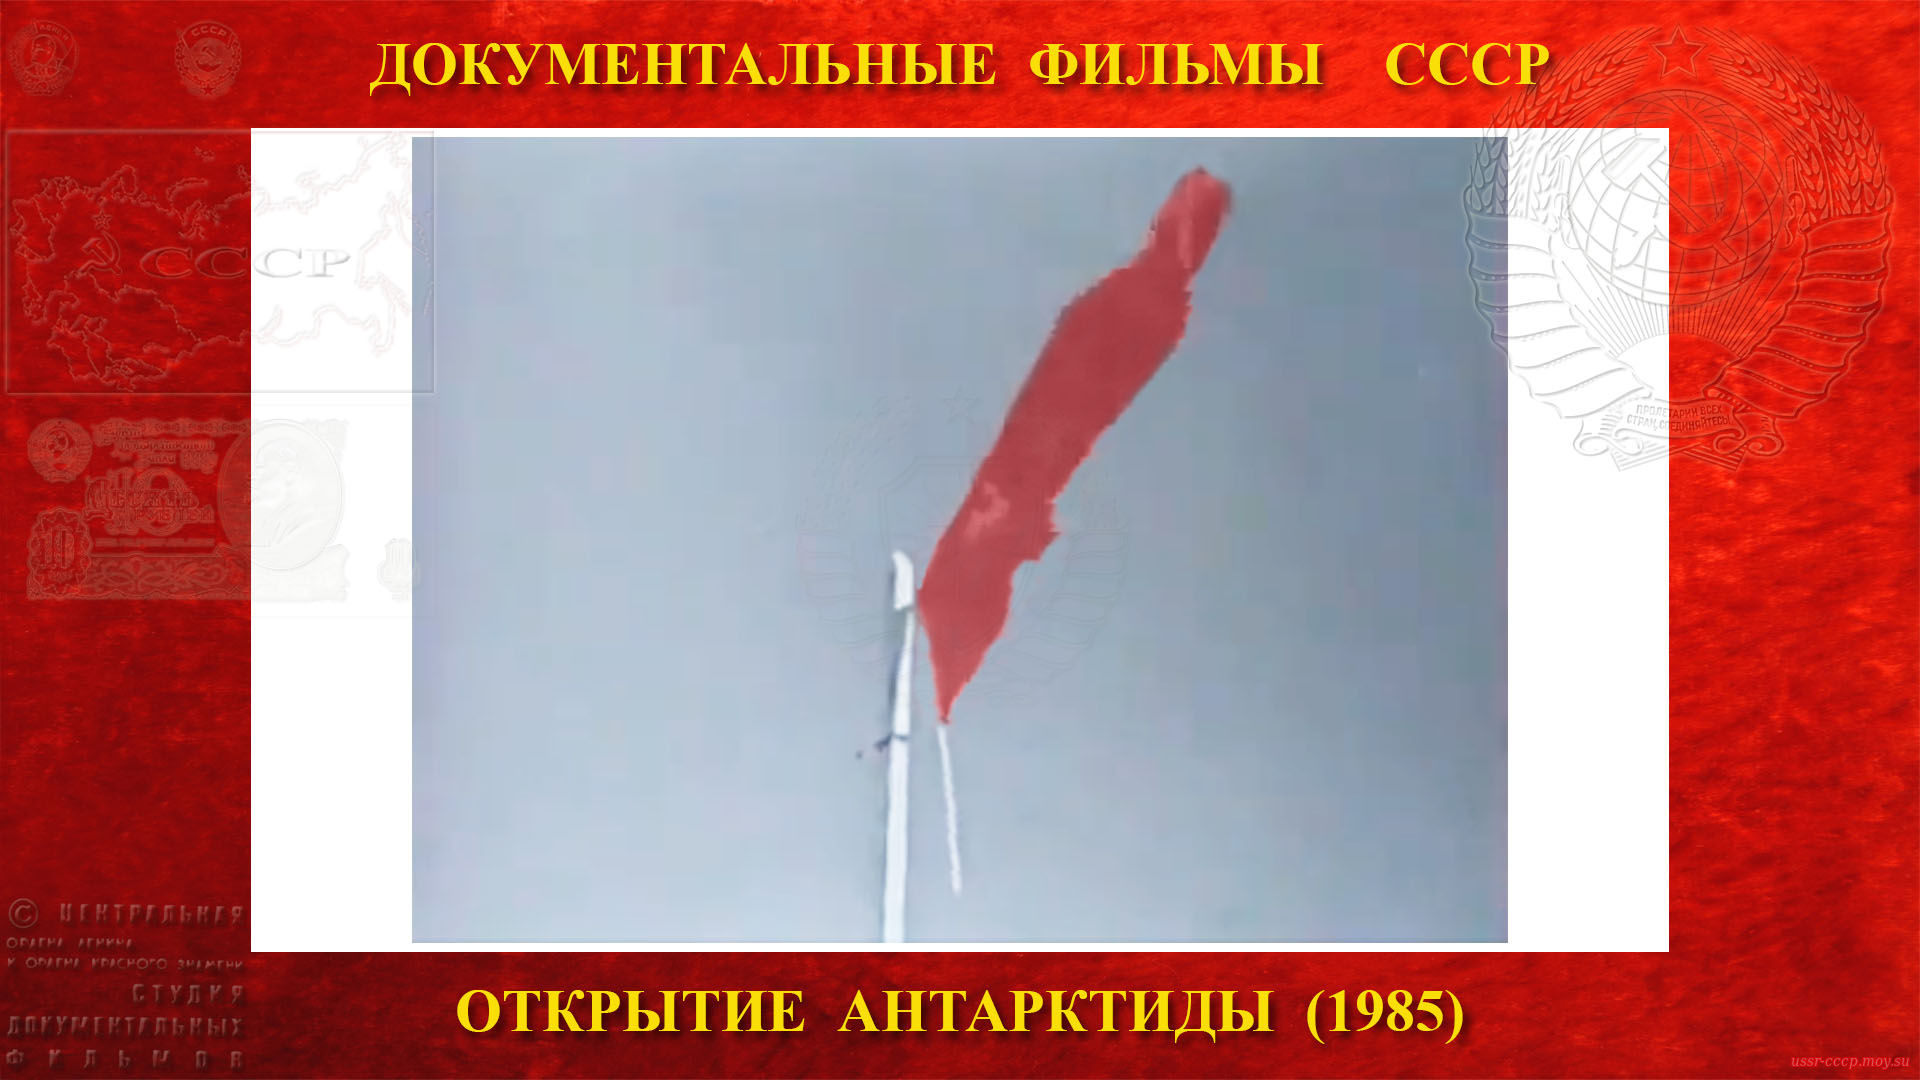 Открытие Антарктиды — кинохроникёру посчастливится запечатлеть на киноплёнку подъём Государственного флага СССР моей Родины на 6-ом континенте земли, я (Кочетков А.С.) посчитал бы этого человека за неуёмного фантазёра, но это произошло, и произошло 13 февраля 1956 года. 